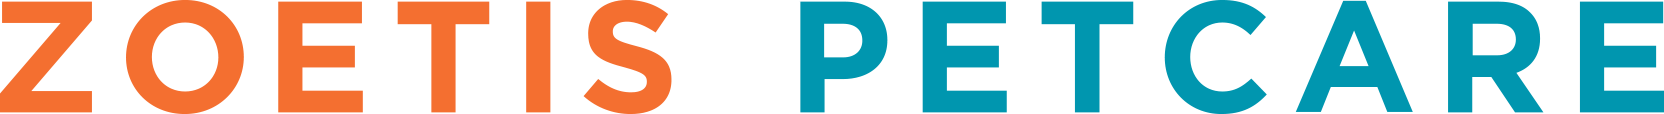 Zoetis Petcare logo